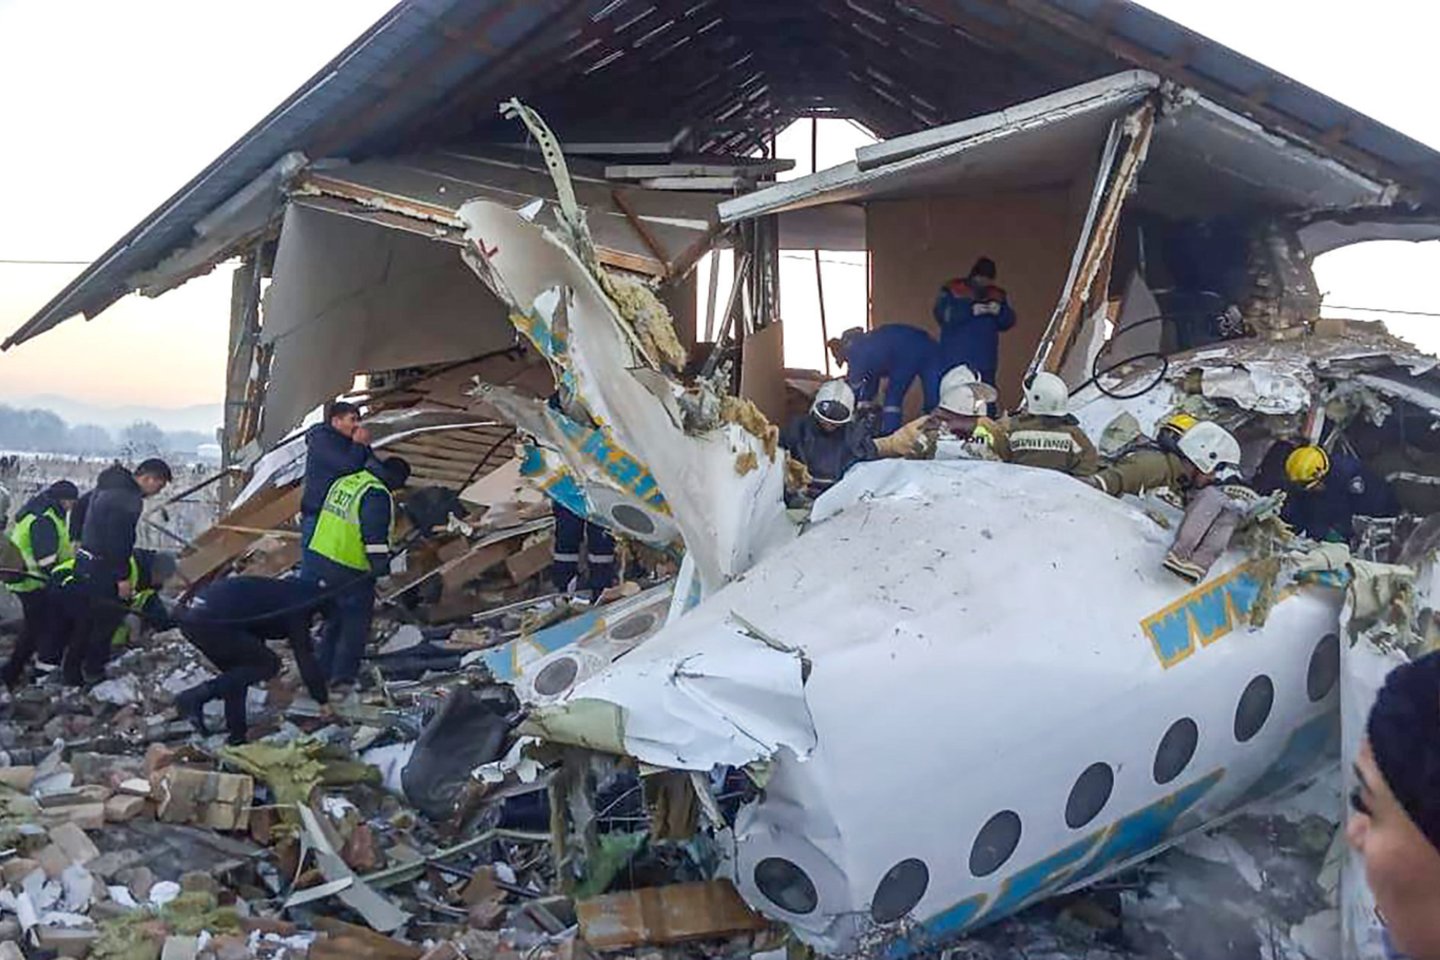 Ankstyvą penktadienio rytą Kazachstane sudužusio oro linijų „Bek Air“ lėktuvo „Fokker 100“ pilotai rengėsi įprastam skrydžiui ir prieš pakylant nefiksavo nieko neįprasto.<br>AFP/Scanpix nuotr.